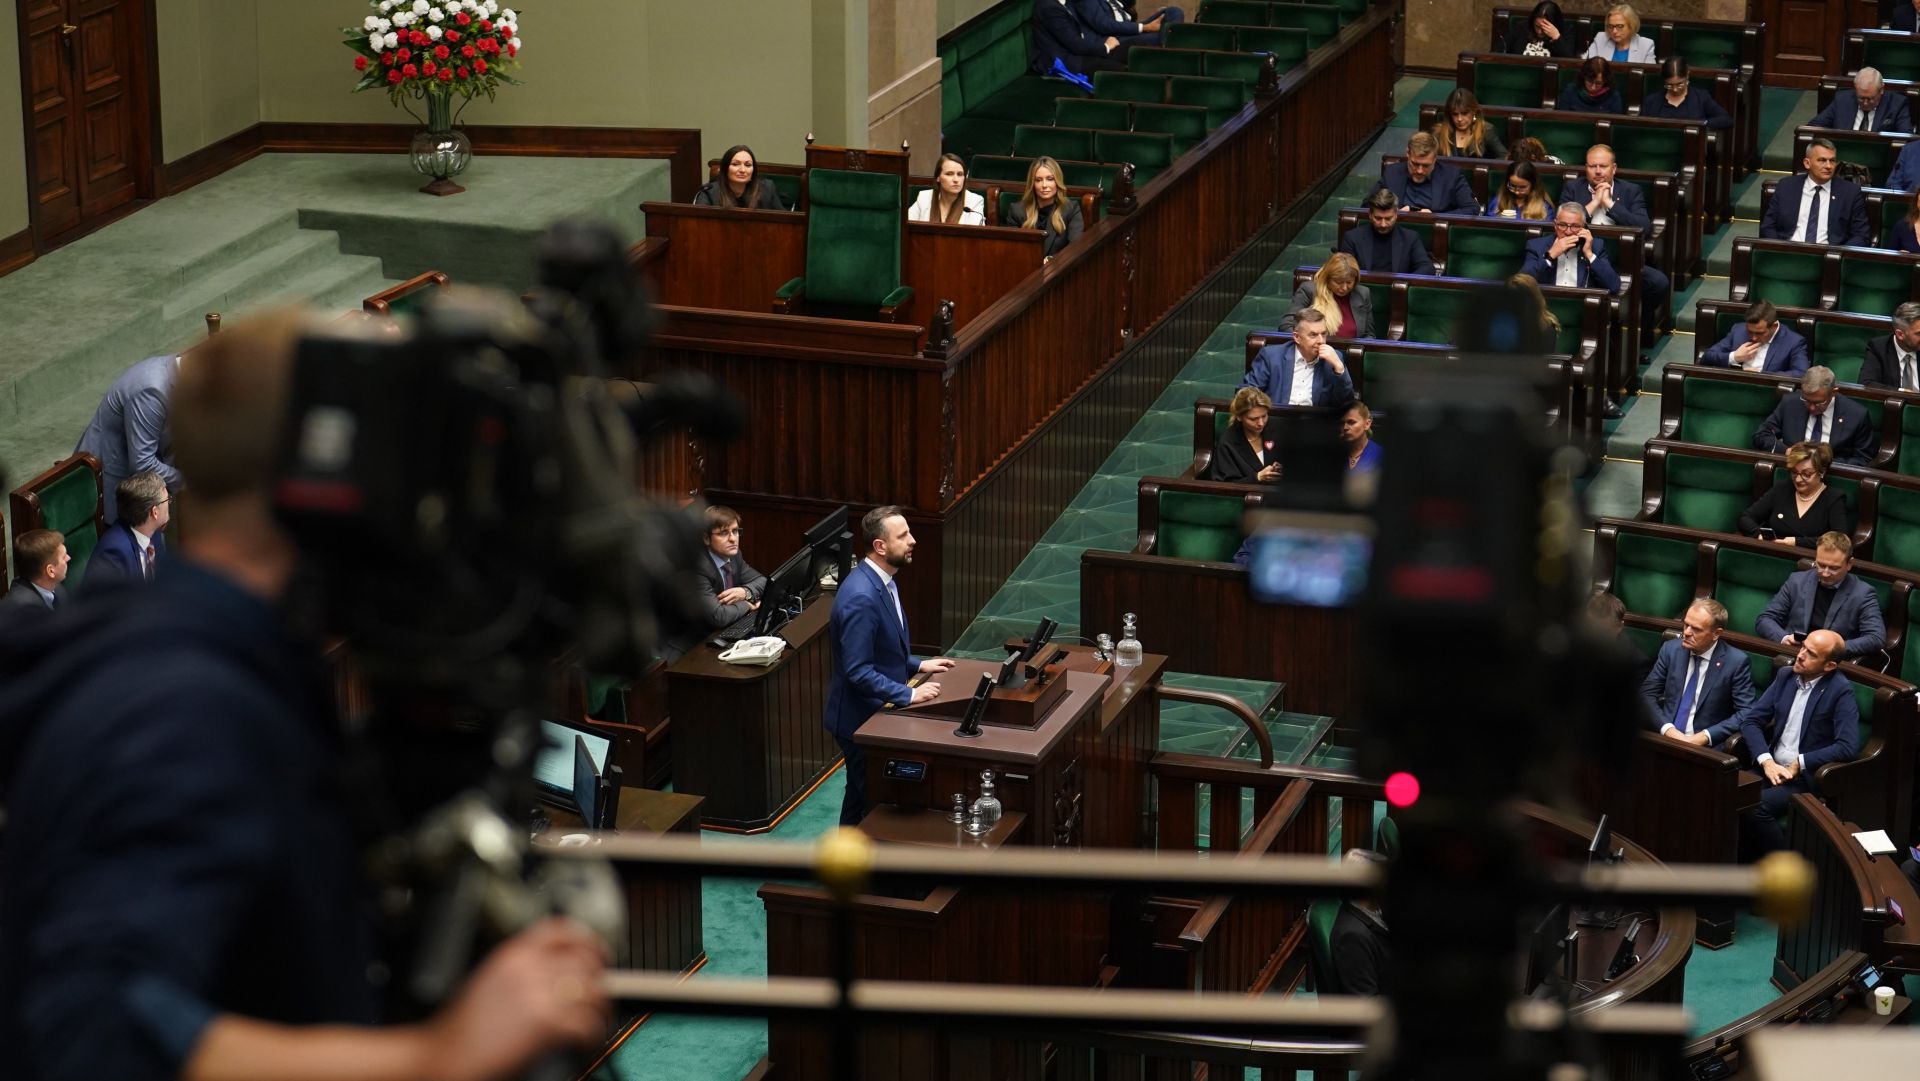 Kolejny dzień pierwszego posiedzenia Sejmu. Posłowie przeprowadzą między innymi pierwsze czytanie obywatelskiego projektu ustawy o sposobie ustalania najniższego wynagrodzenia zasadniczego niektórych pracowników zatrudnionych w podmiotach leczniczych.